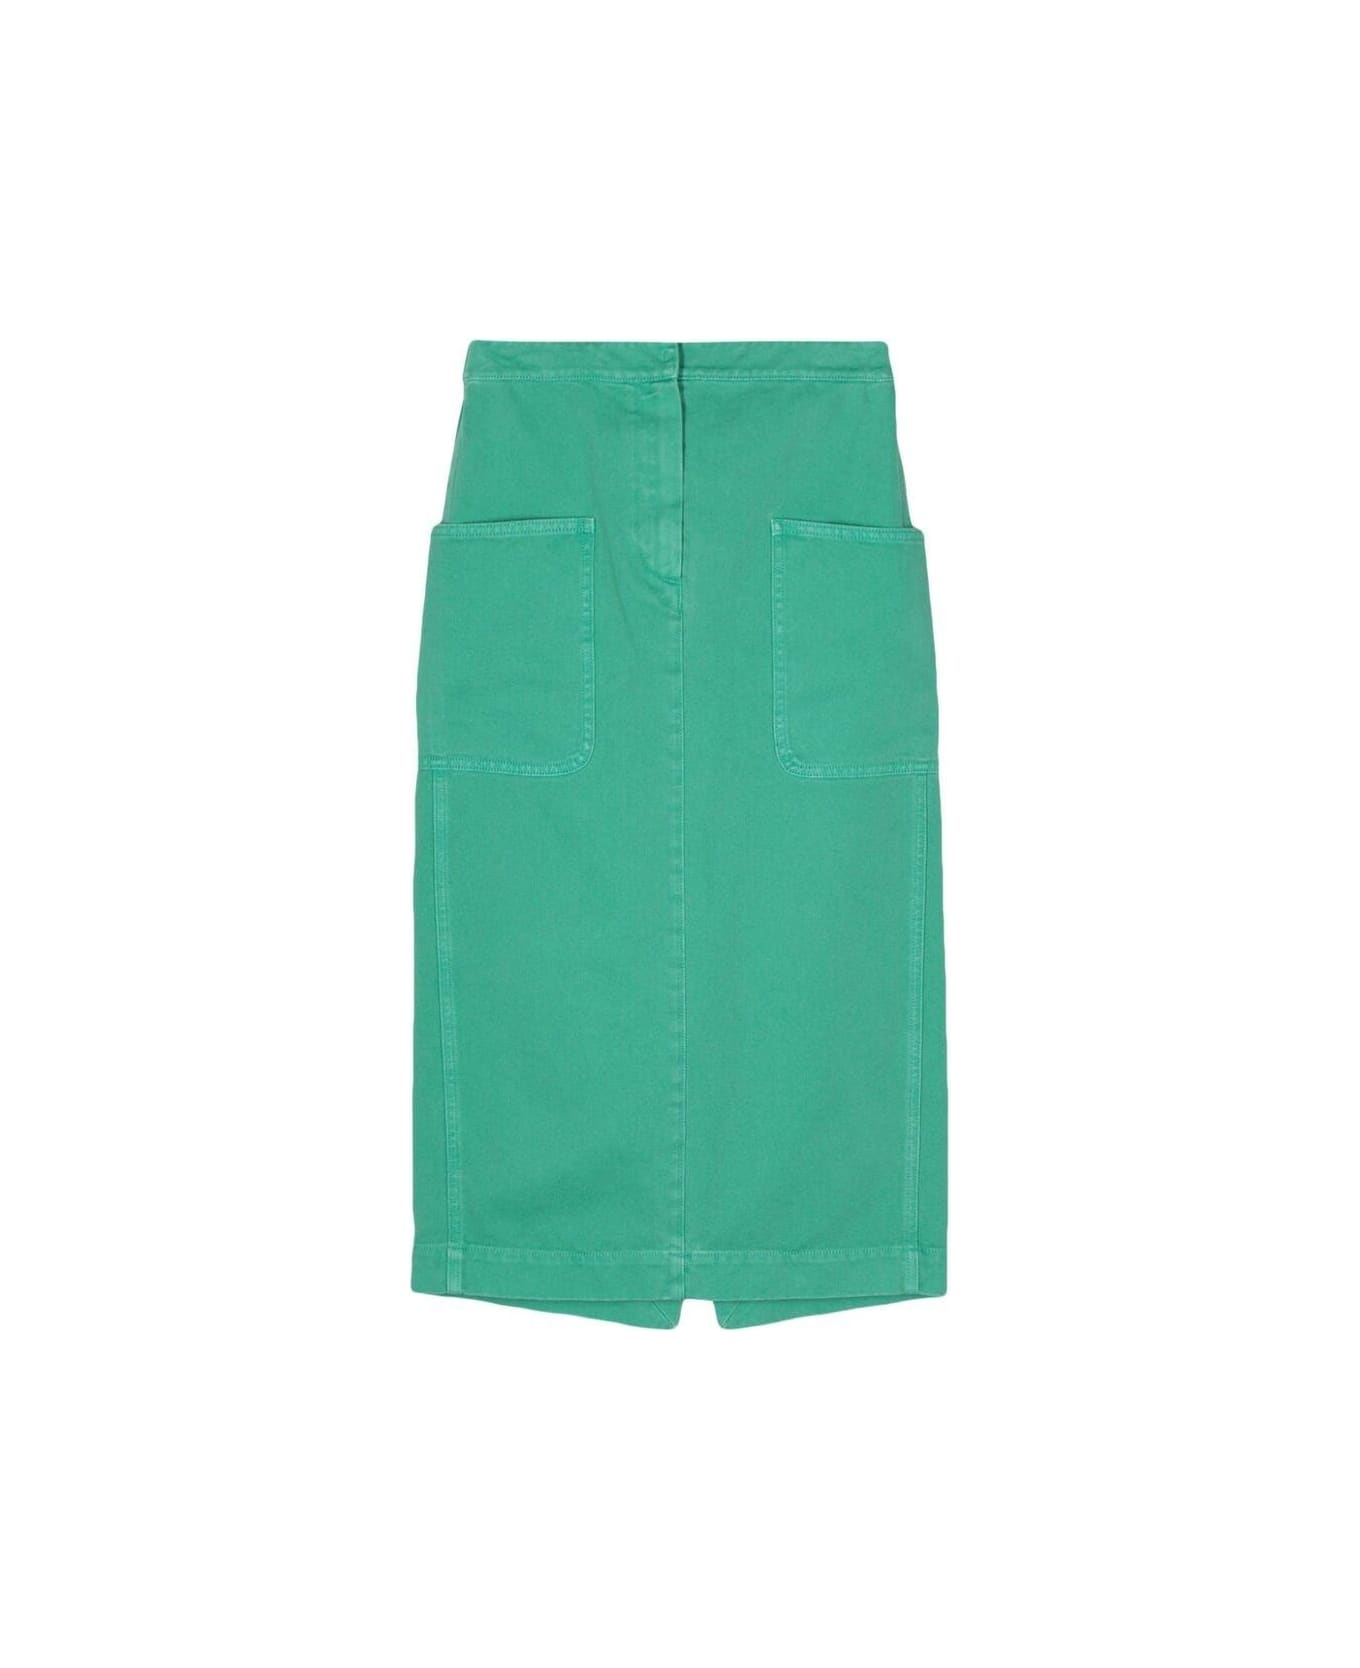 Max Mara Pocket Detailed Skirt スカート